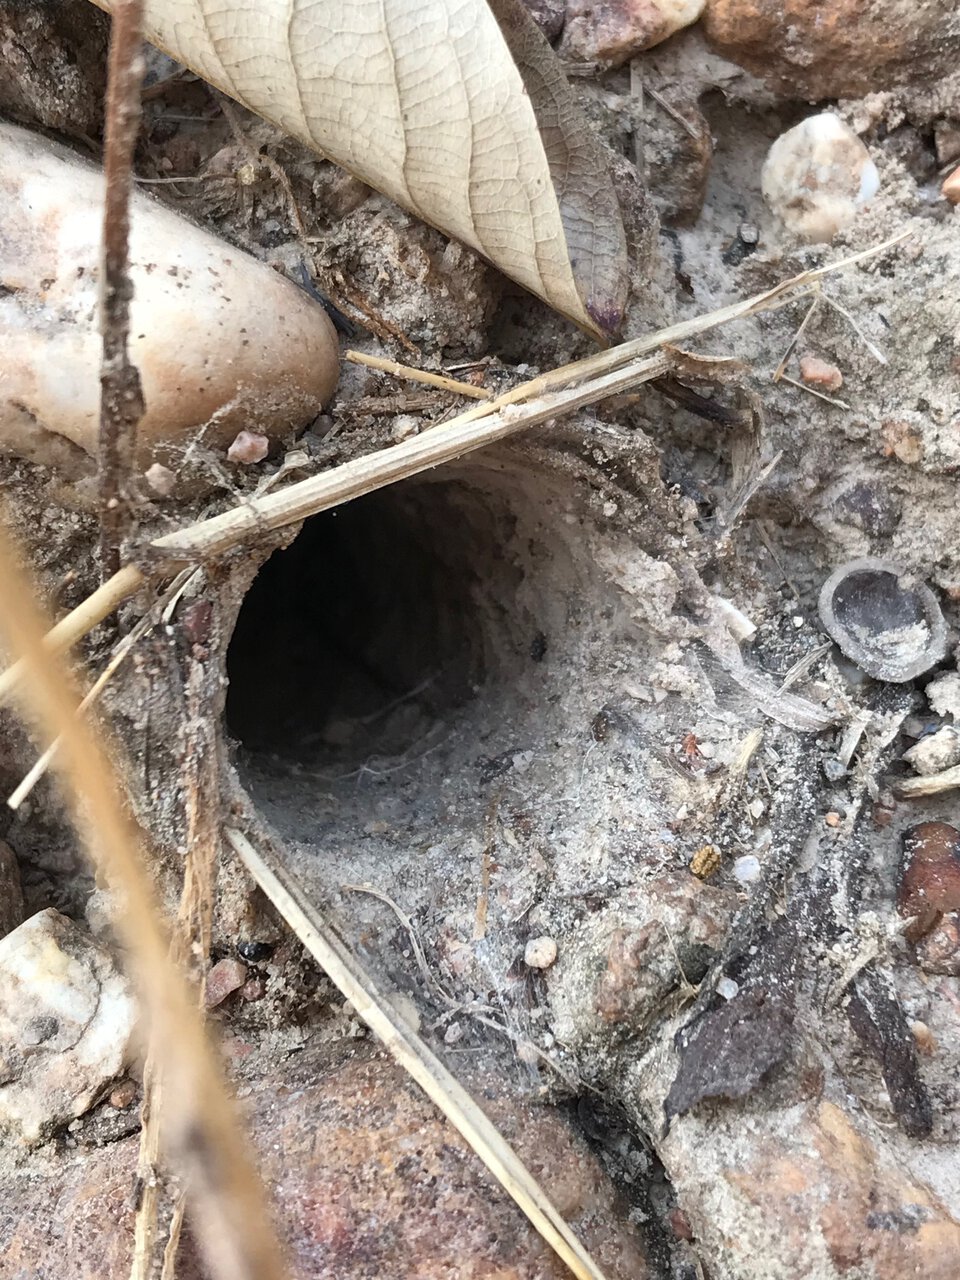 A big Cyriopagopus burrow